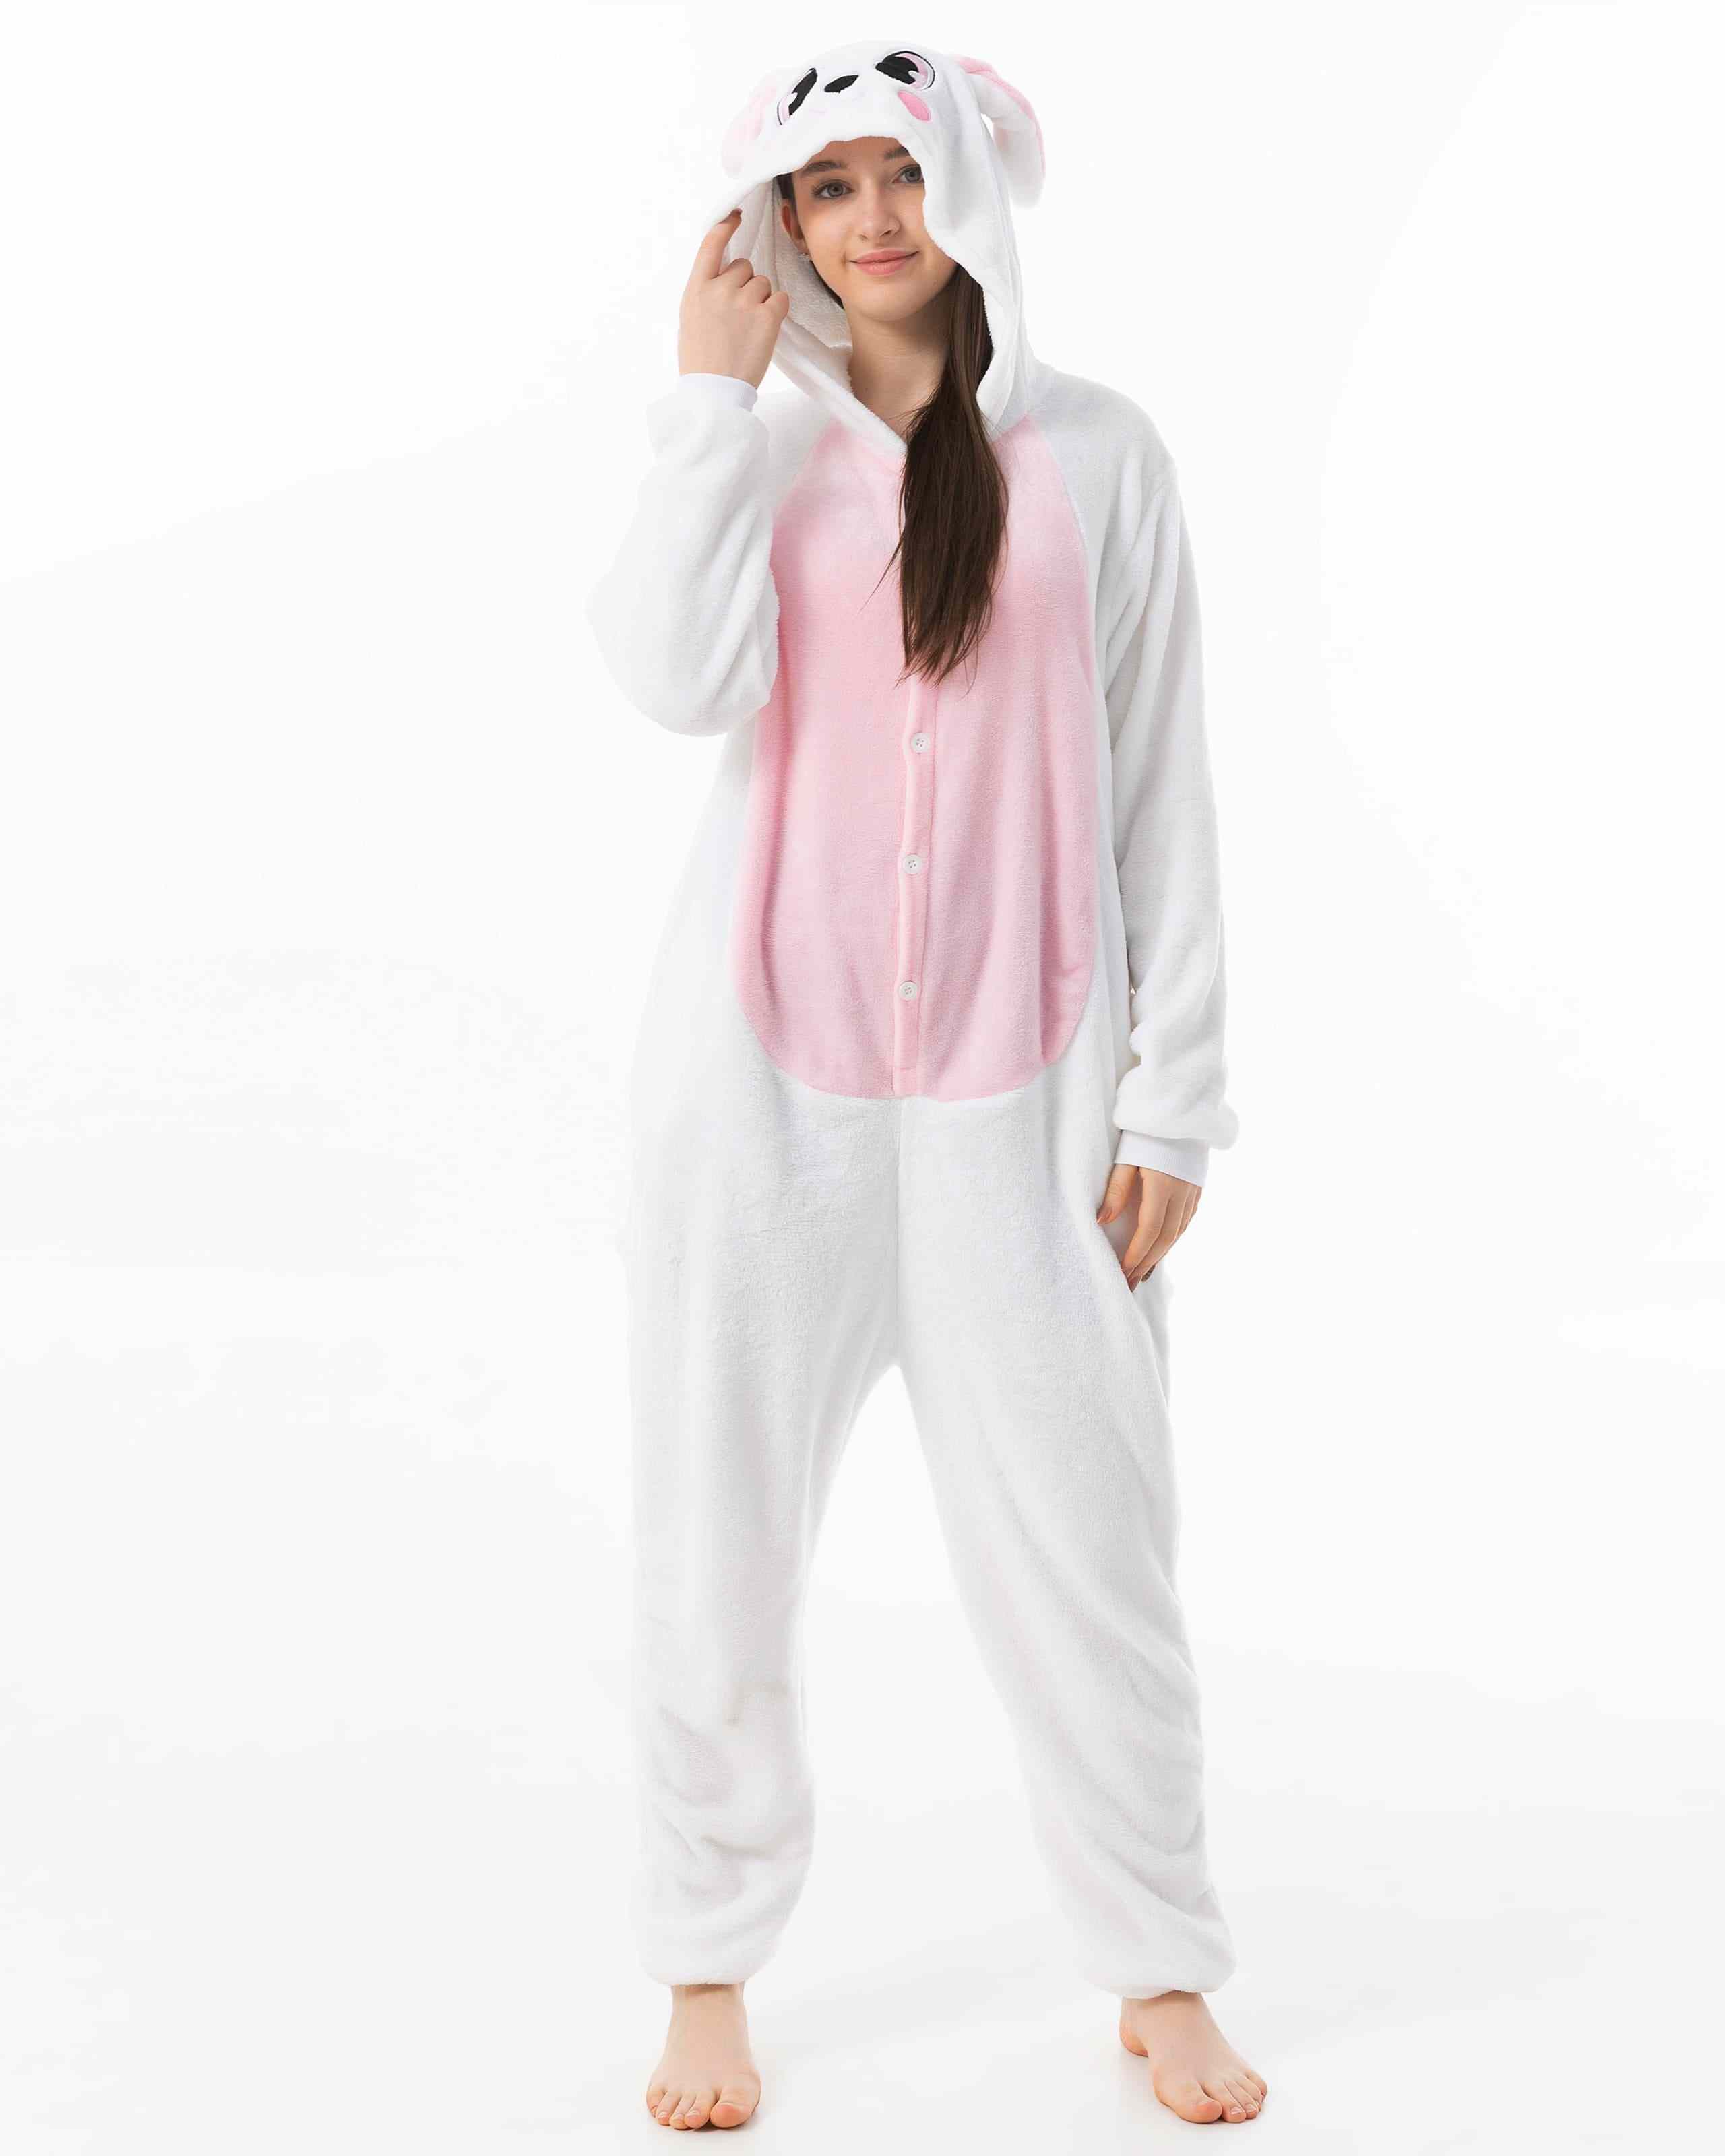 Katara Partyanzug Bauernhoftiere Jumpsuit Kostüm für Erwachsene S-XL, Karneval - Kostüm, Kigurumi - Hase rosa-weiß S (145-155cm)